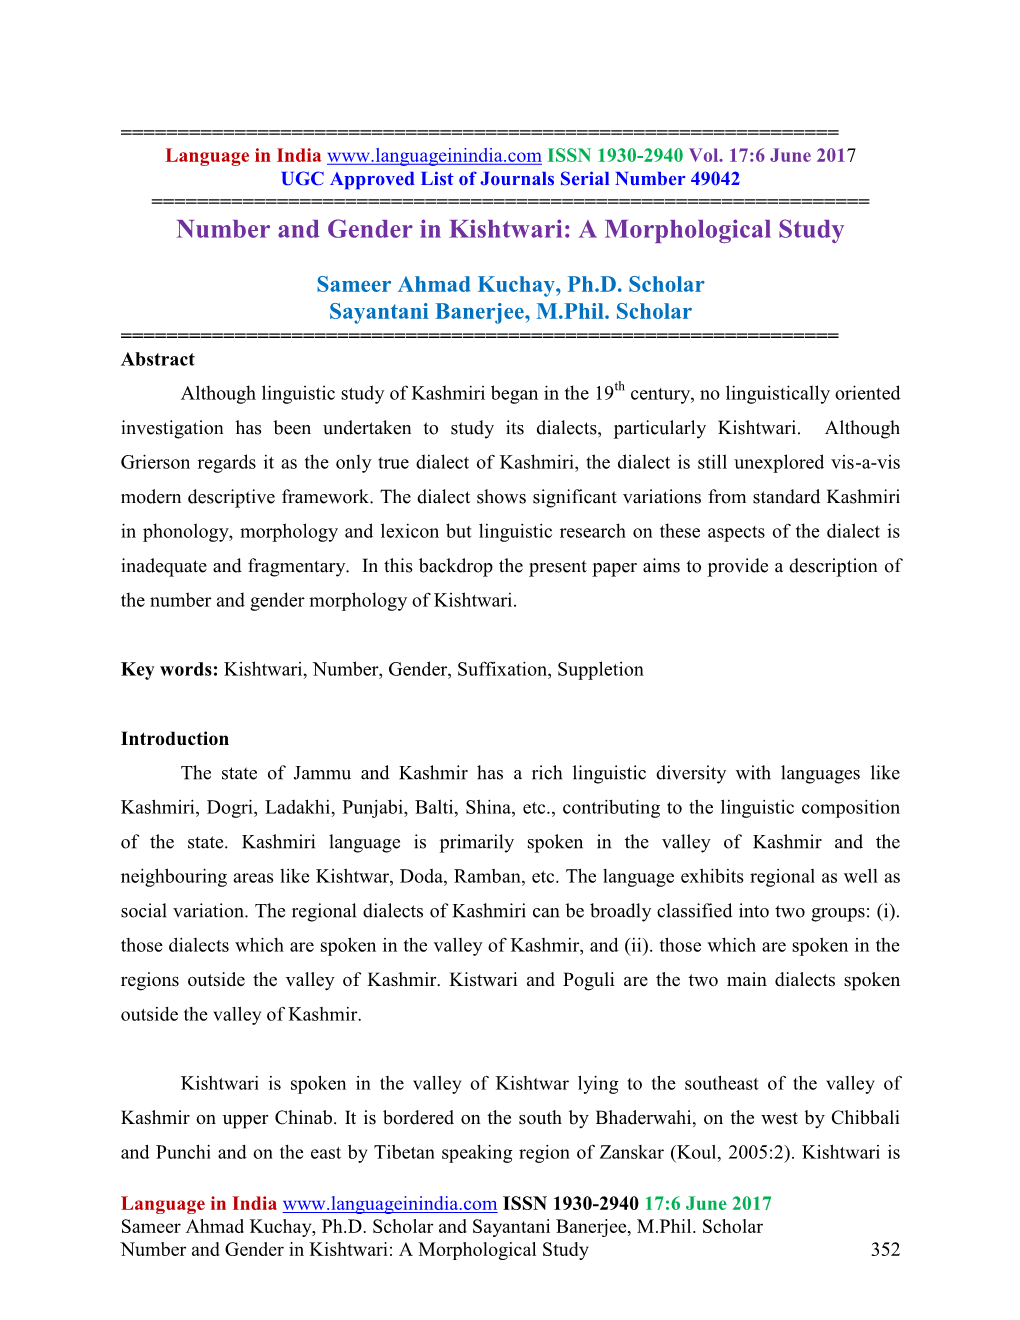 Number and Gender in Kishtwari: a Morphological Study